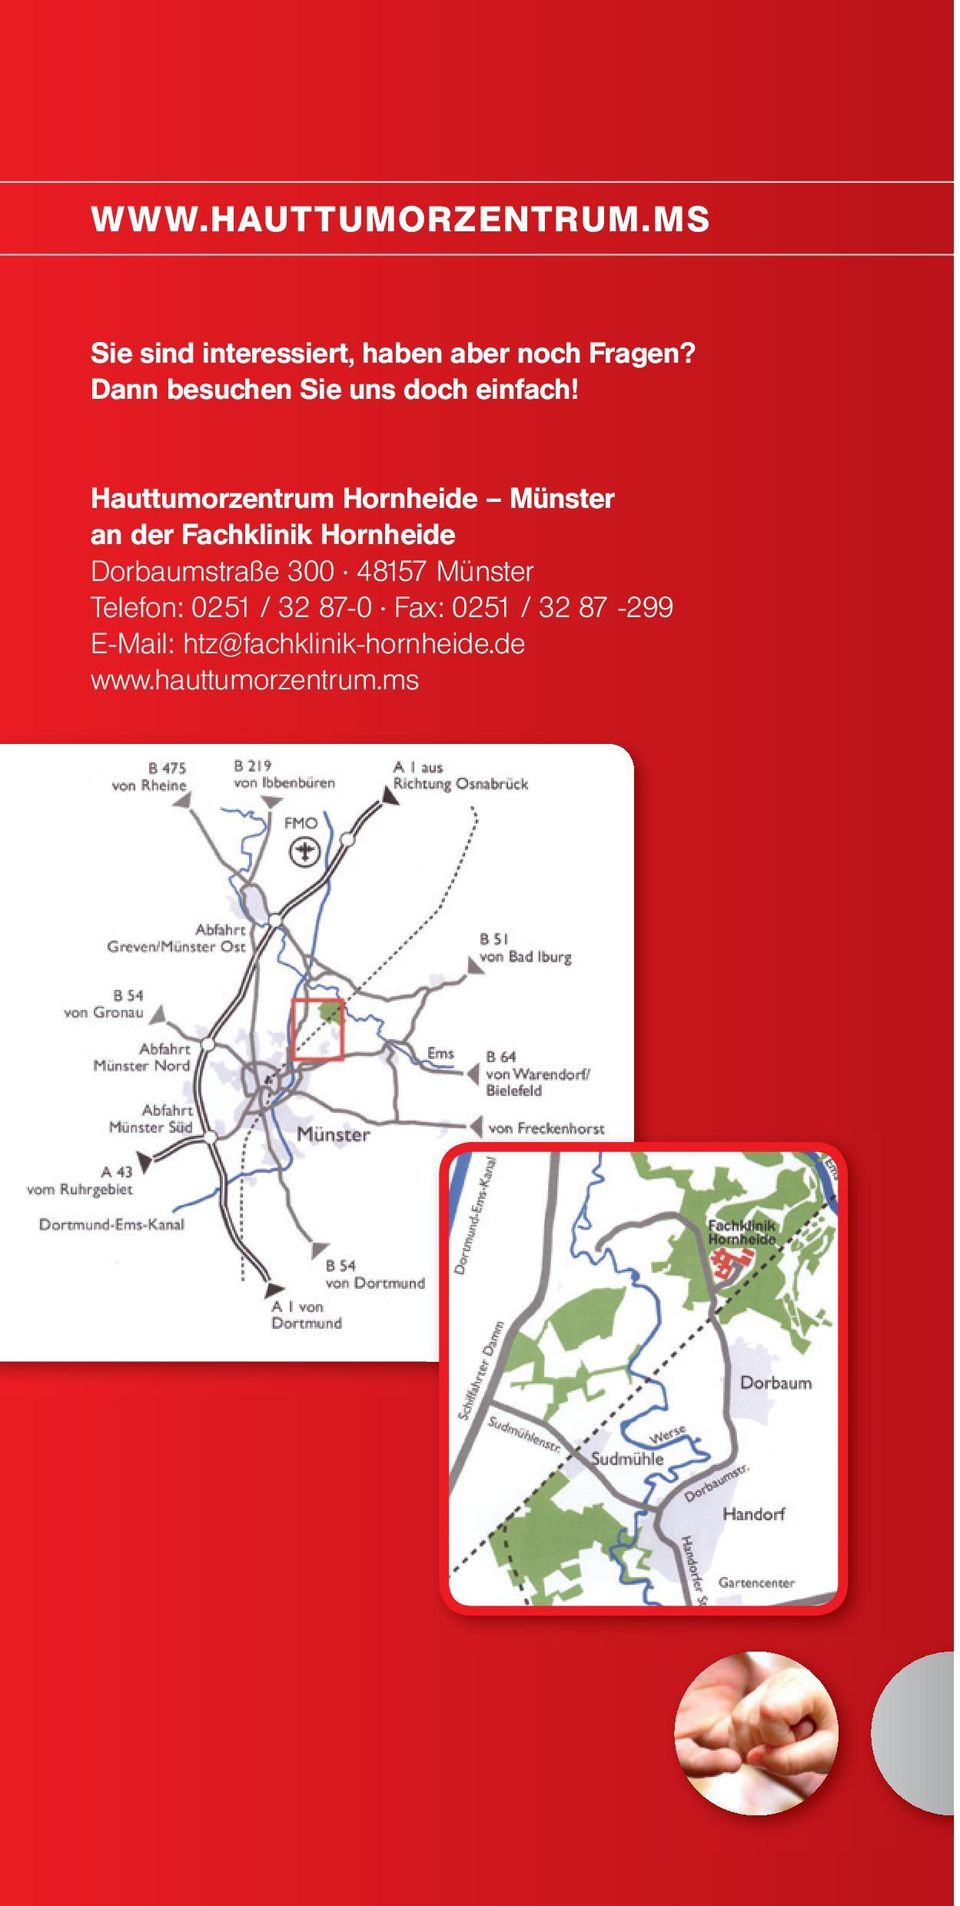 Hauttumorzentrum Hornheide Münster an der Fachklinik Hornheide Dorbaumstraße